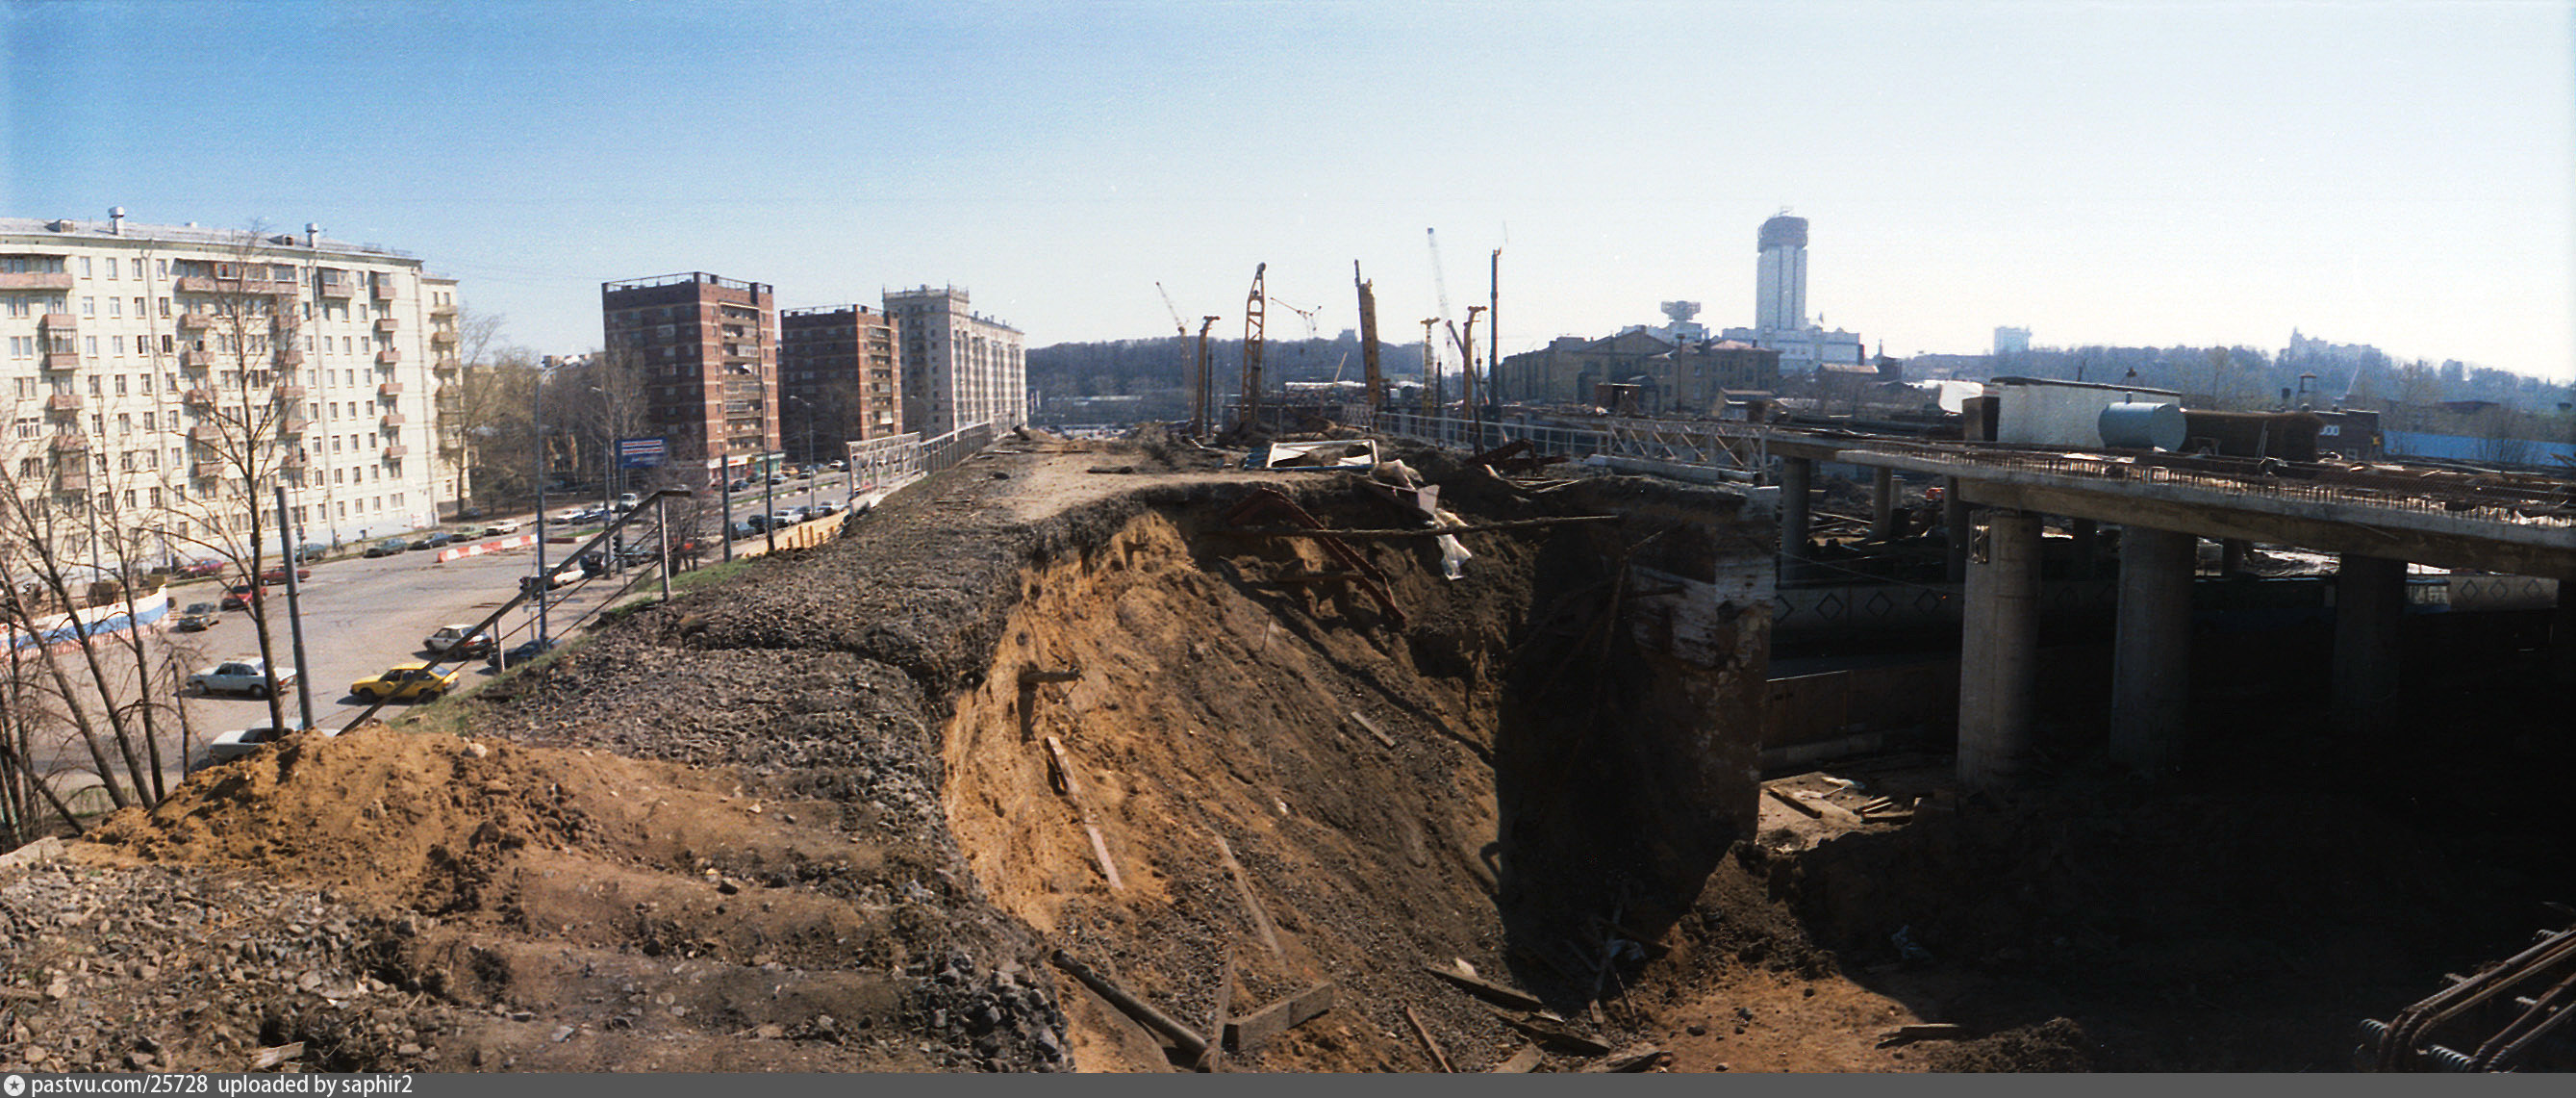 Что произошло в 2000 году. Строительство третьего транспортного кольца. Москва 2000 год. Стройка в 2000. Москва в 2000-е годы.